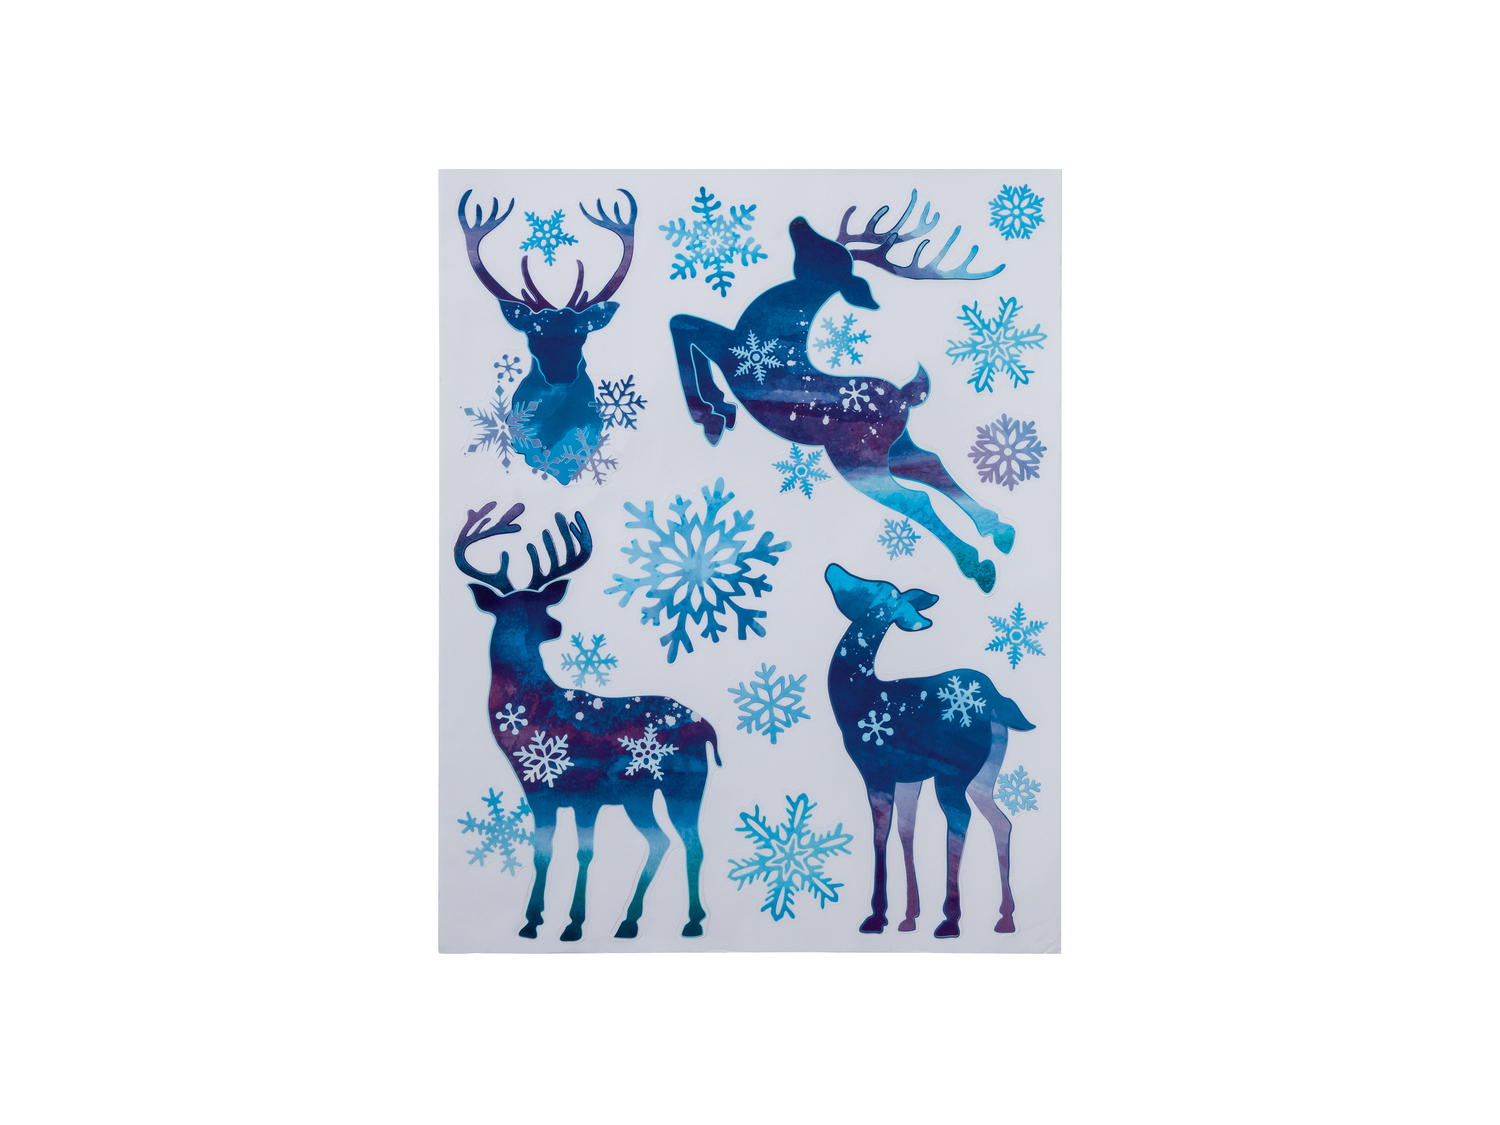 Decorazioni natalizie per finestre Melinera, prezzo 0.99 &#8364;  

Caratteristiche